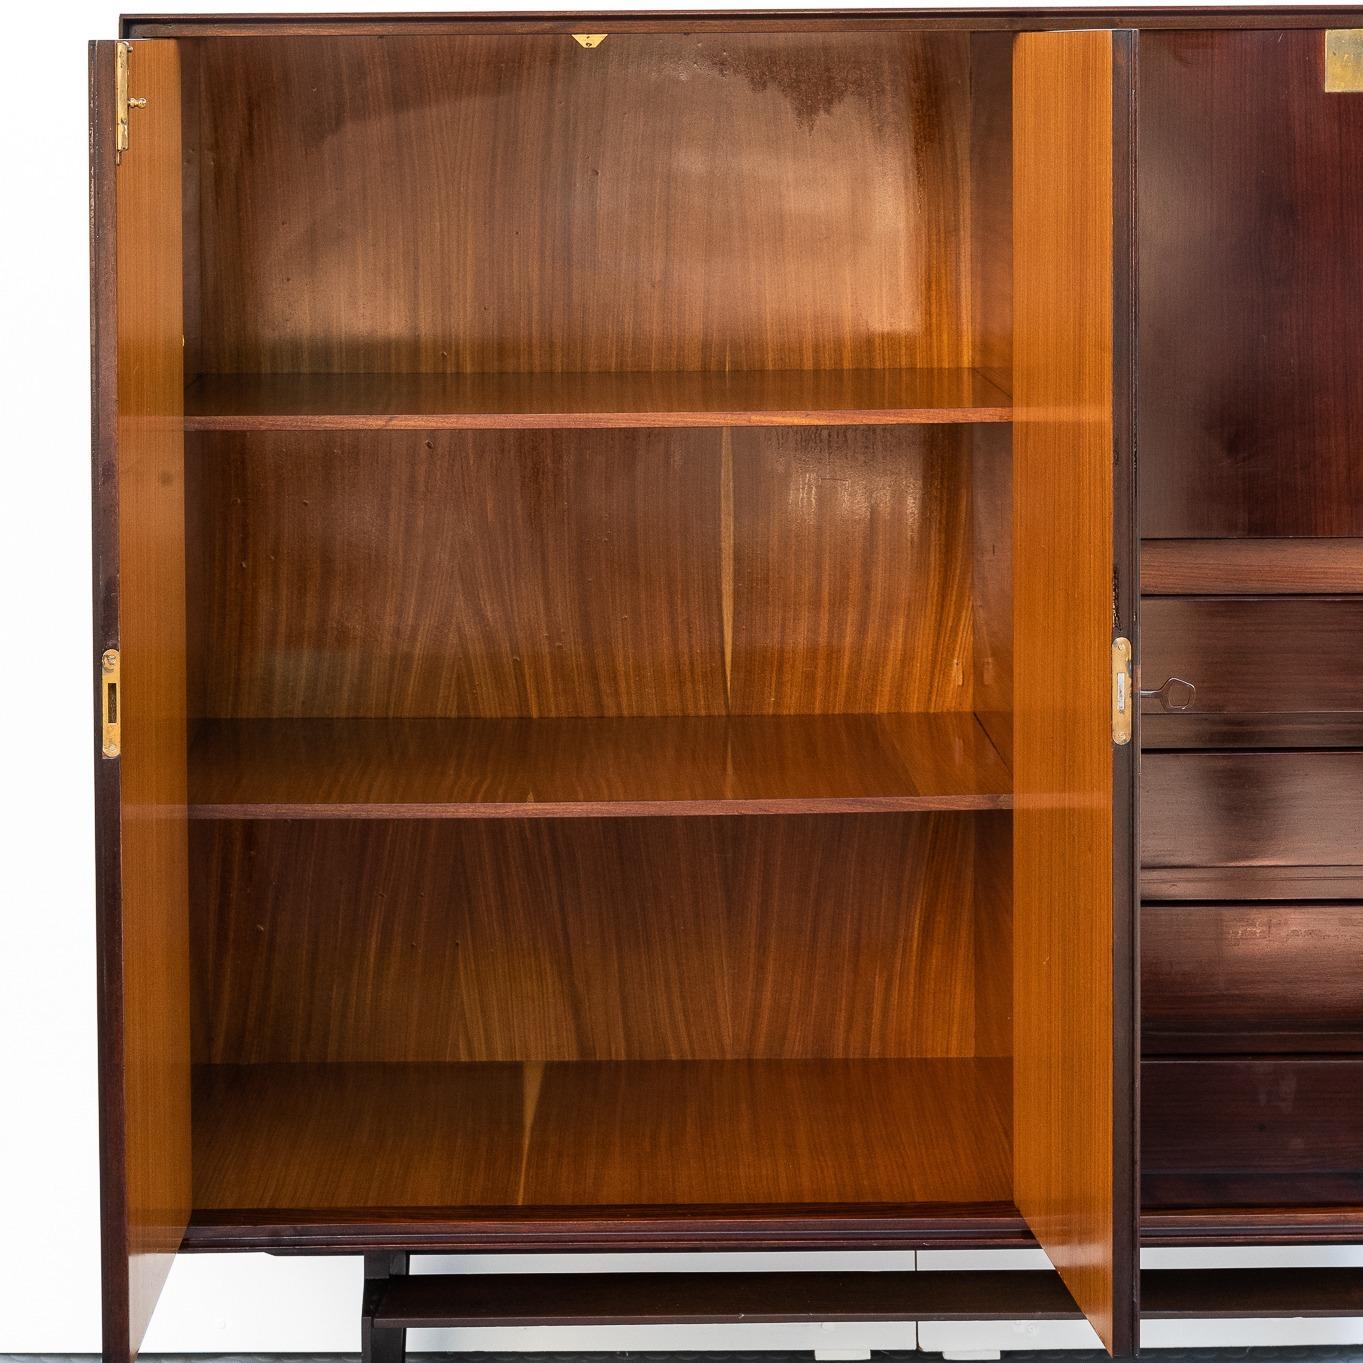 Questa Sideboard dell'anno 1960 ha due sportelli a battente con cassetti realizzati in legno impiallacciato in palissandro,  con maniglie in ottone. Il Designer è Edmondo Palutari, Produzione di Vittorio Dassi dal 1960-1969.  
L'anta a ribalta sul